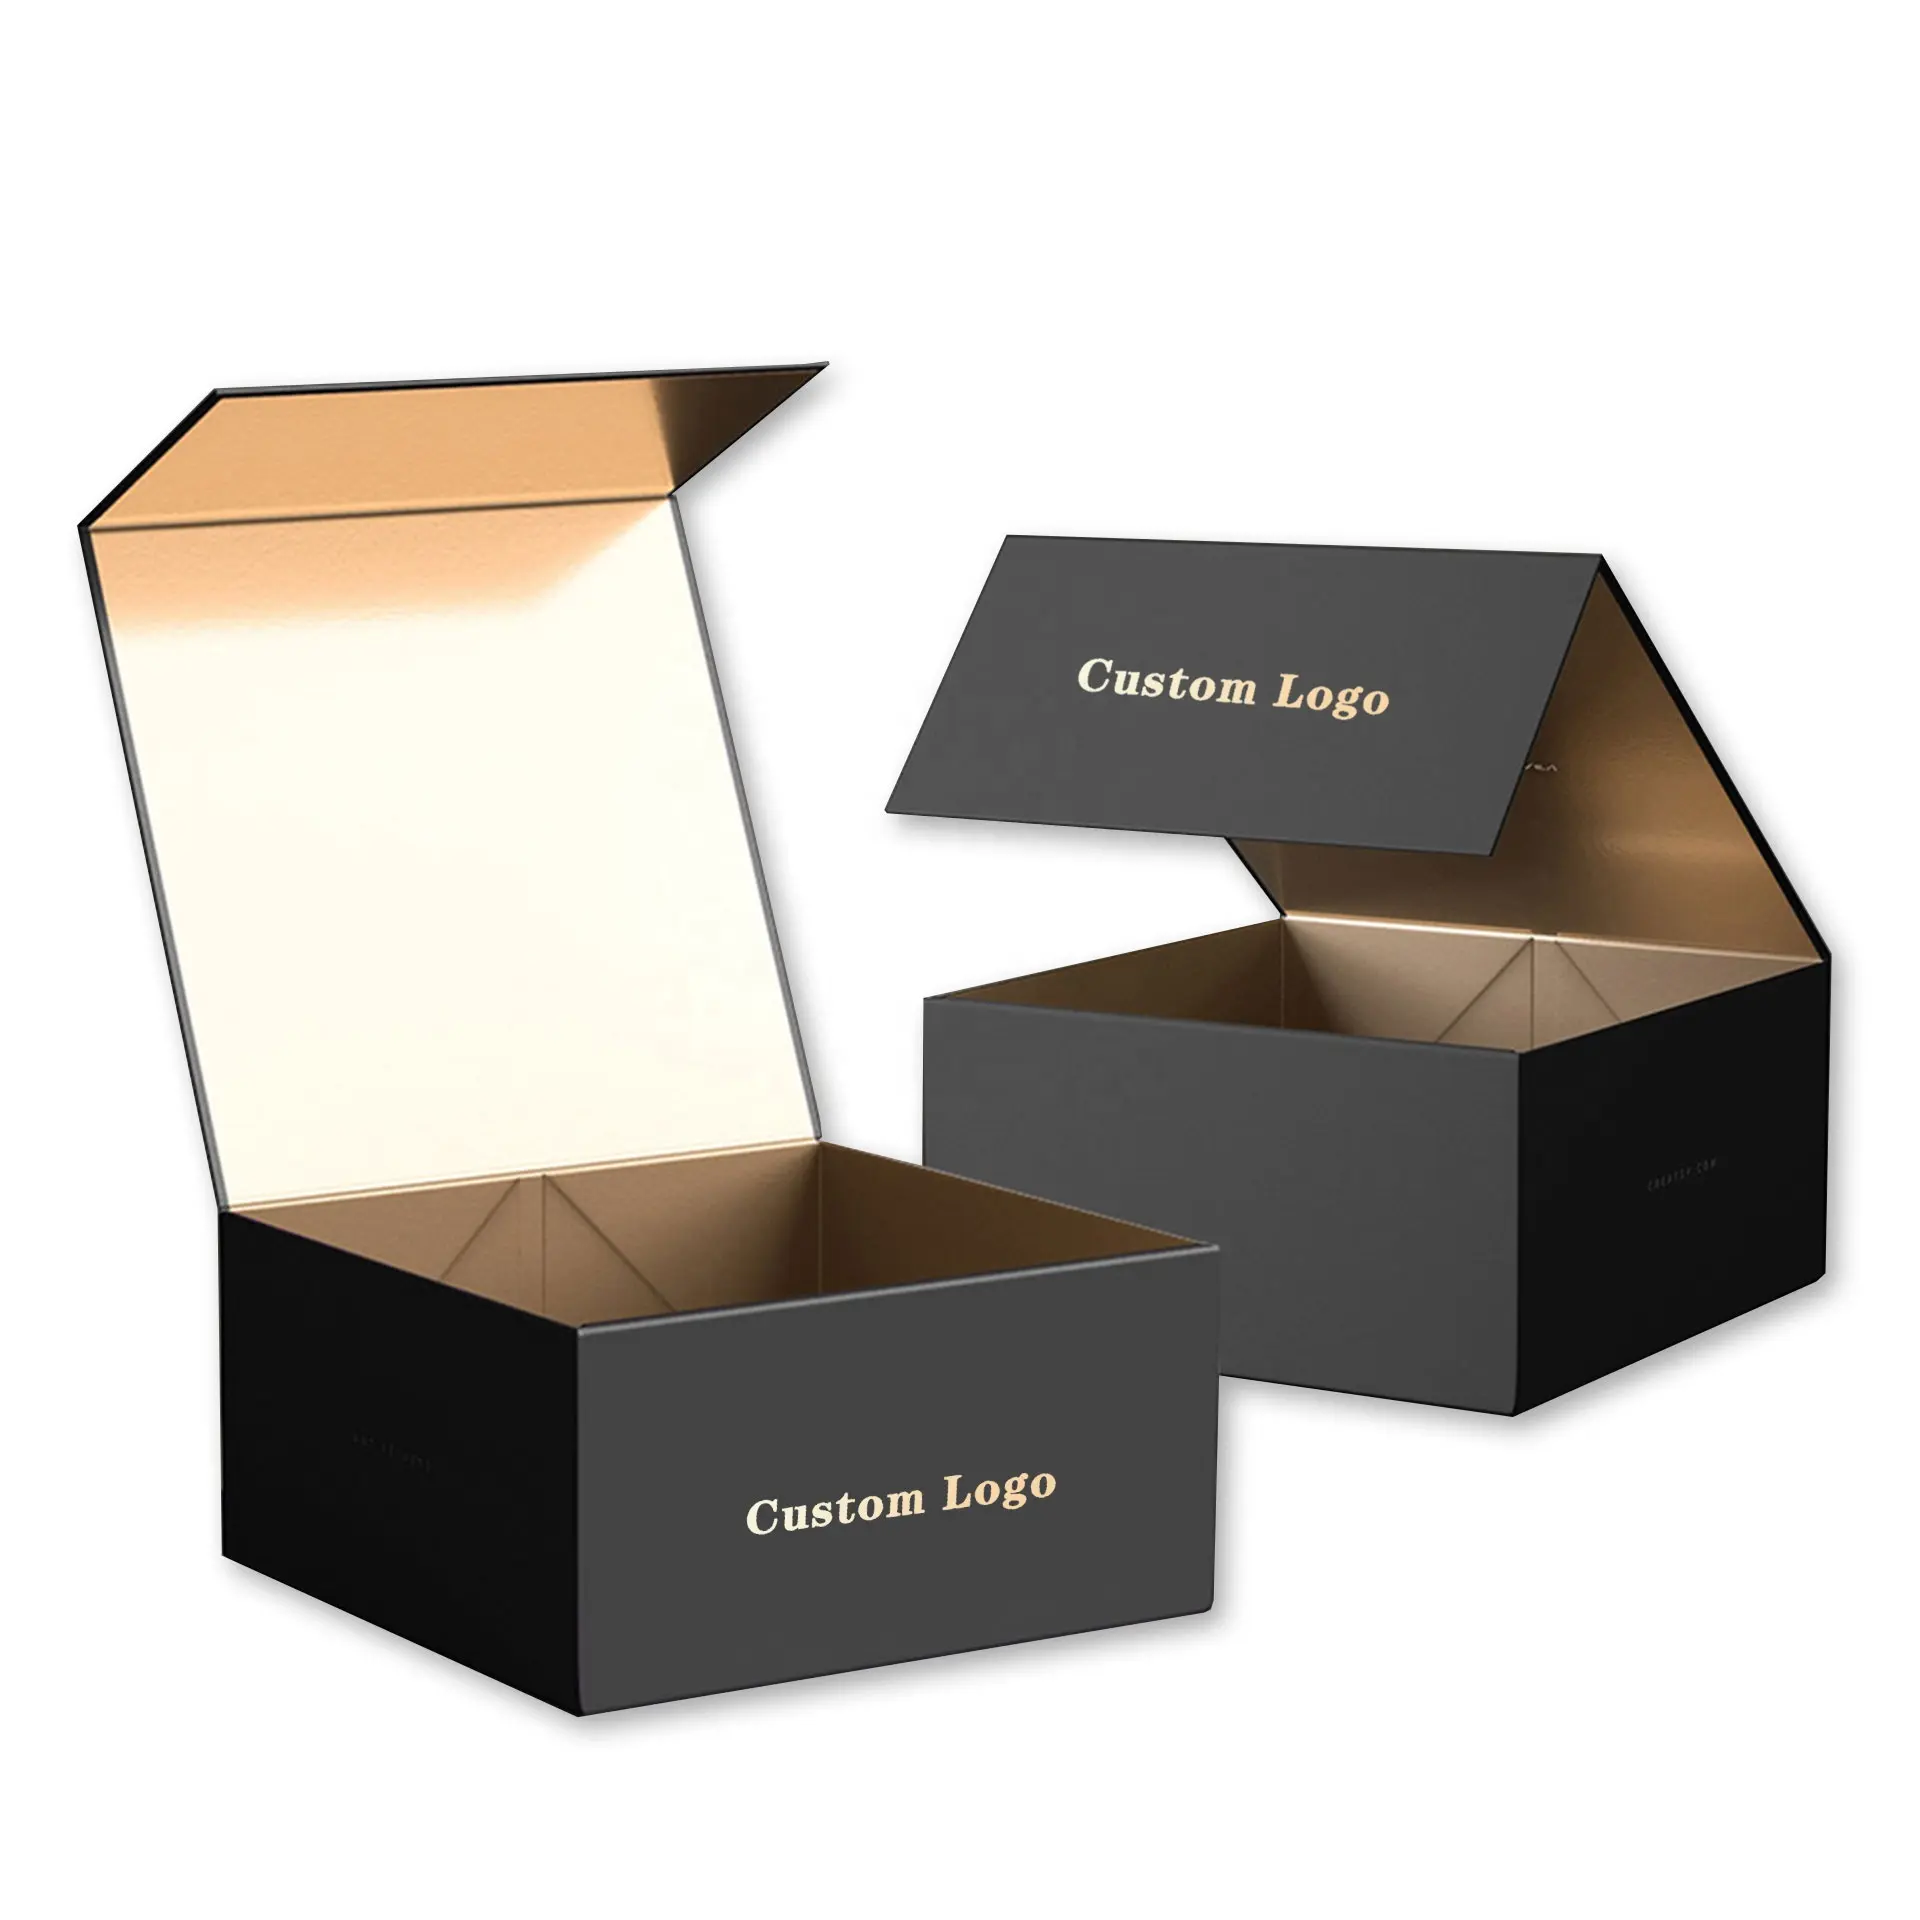 Özel Logo lüks siyah mıknatıs karton kağıt ambalaj ile sıcak altın gümüş folyo sıcak damgalama hediye nakliye kutuları